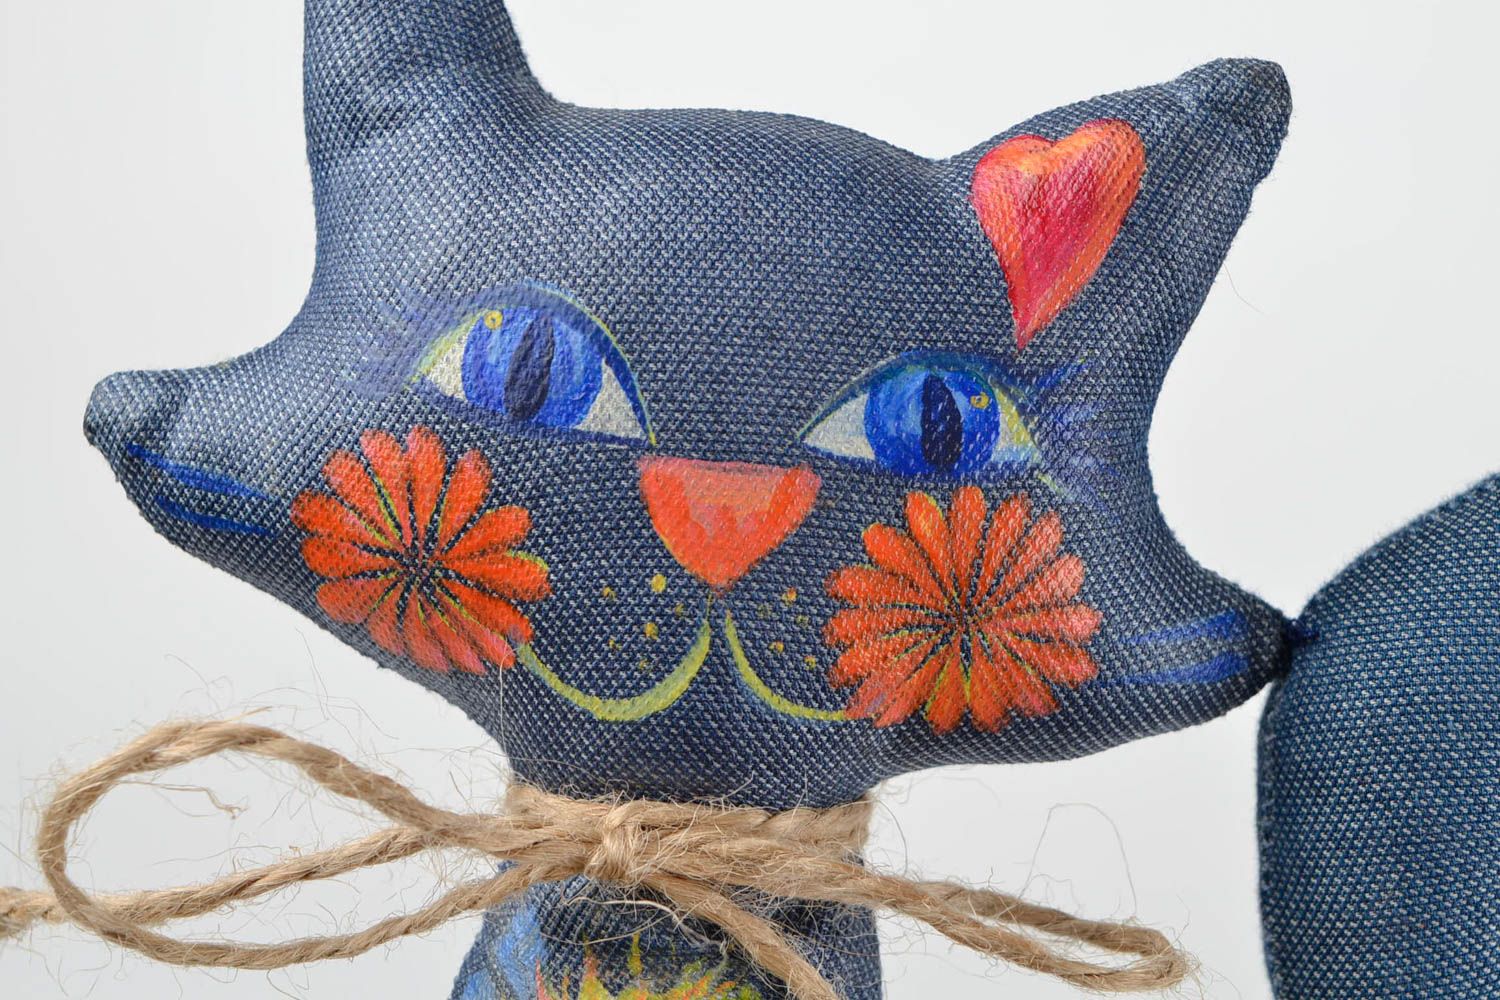 Игрушка кошка игрушка ручной работы интересный подарок Кошка из джинса расписная фото 3